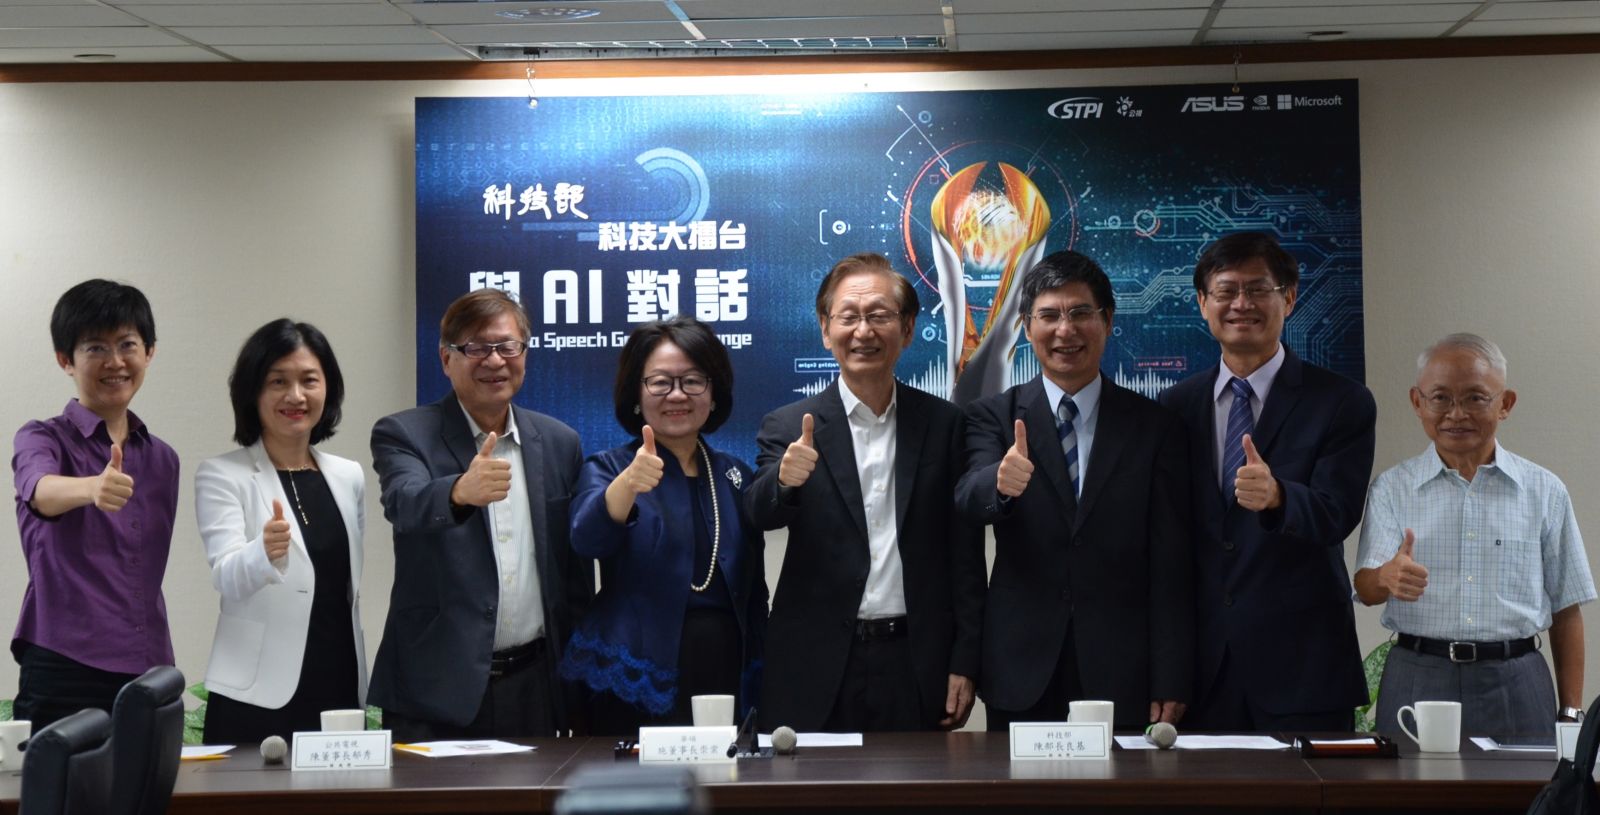 「科技大擂台 與AI對話」科技部要讓機器人聽臺灣國語嘛A通 | 文章內置圖片